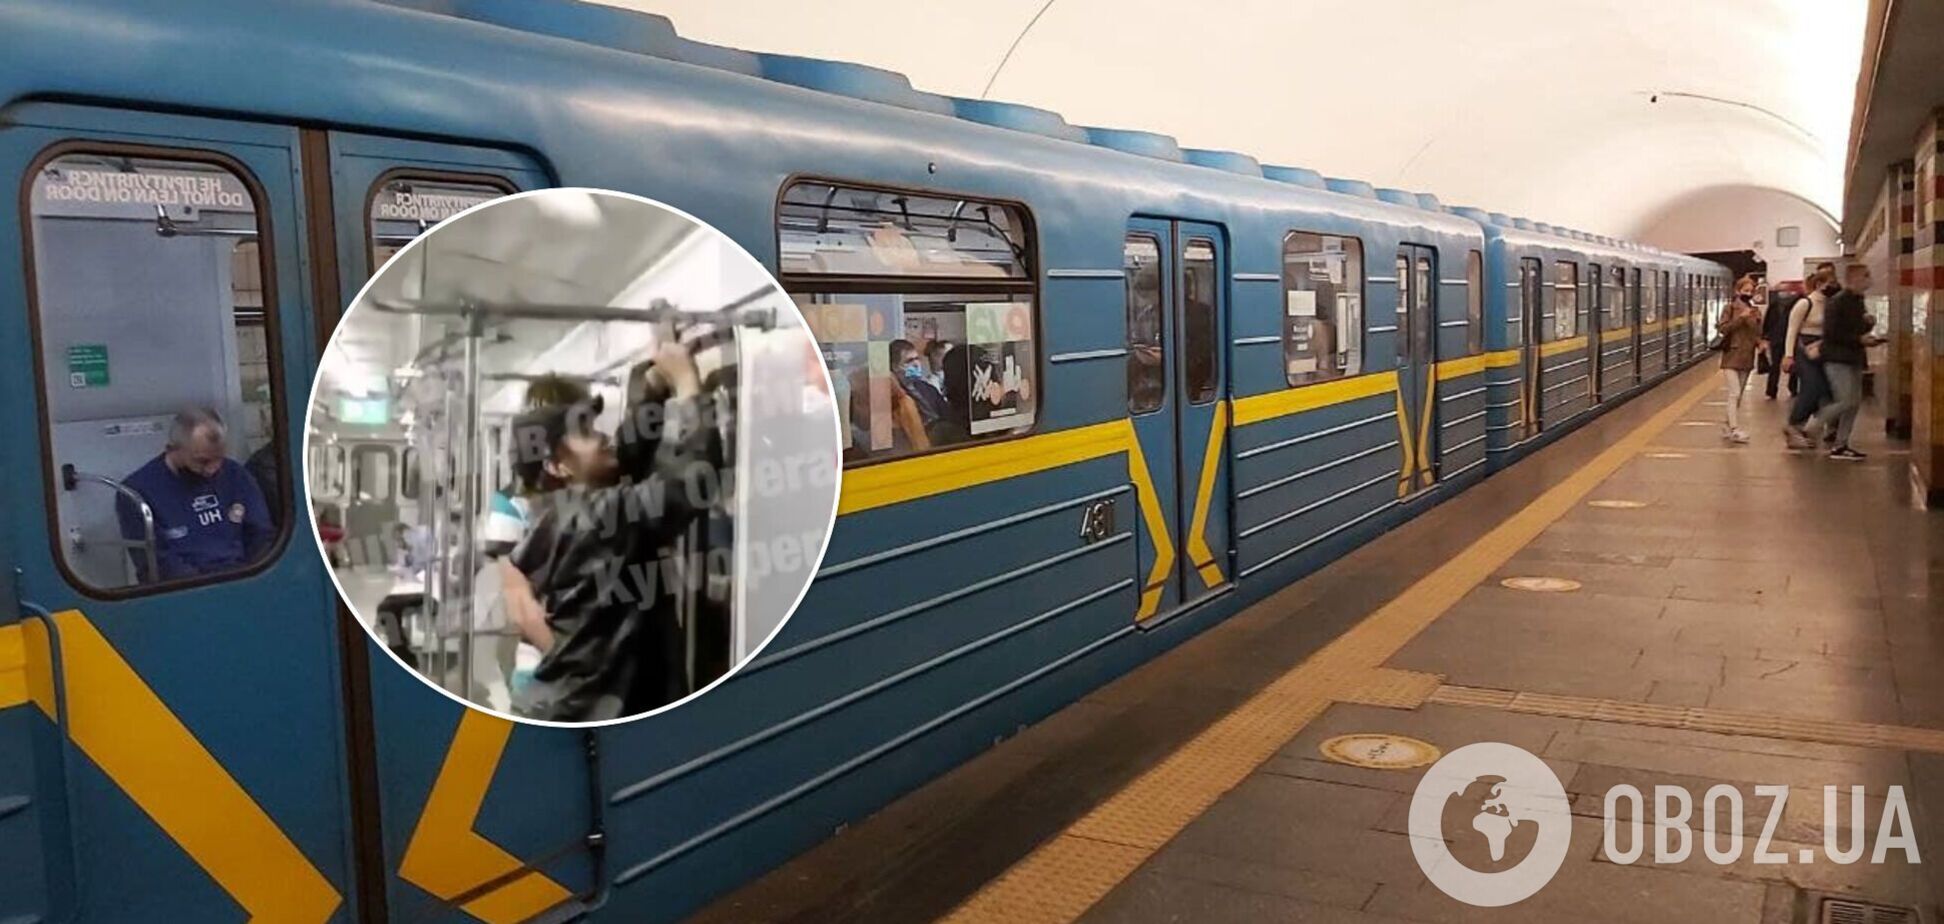 Сотрудники метрополитена уже отмыли вагон от рисунков